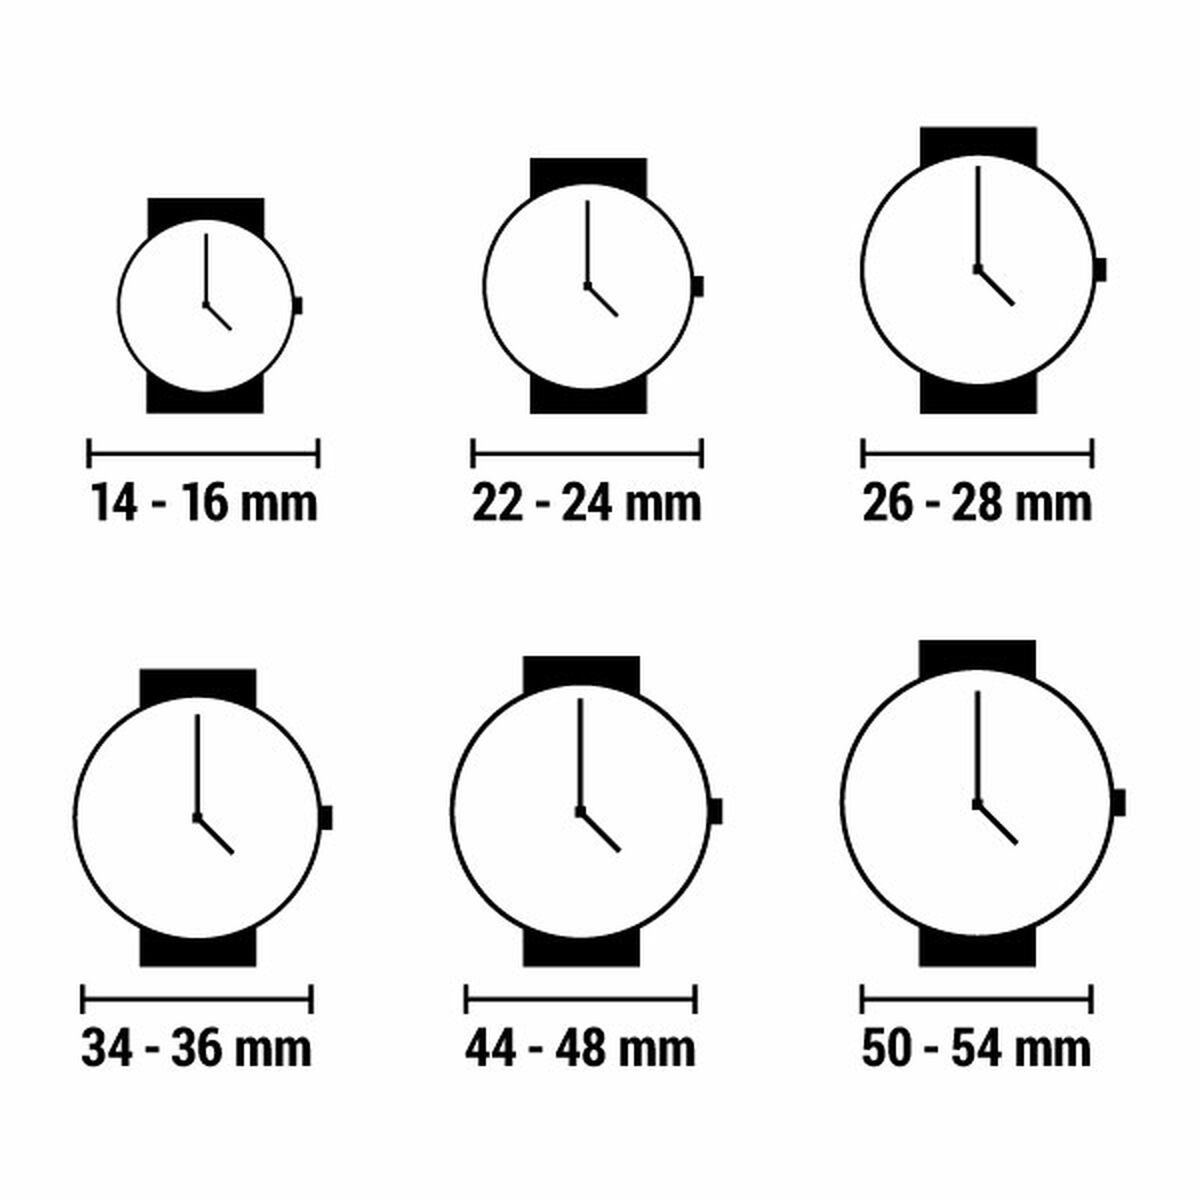 Horloge Dames Radiant RA587202 (Ø 44,5 mm)